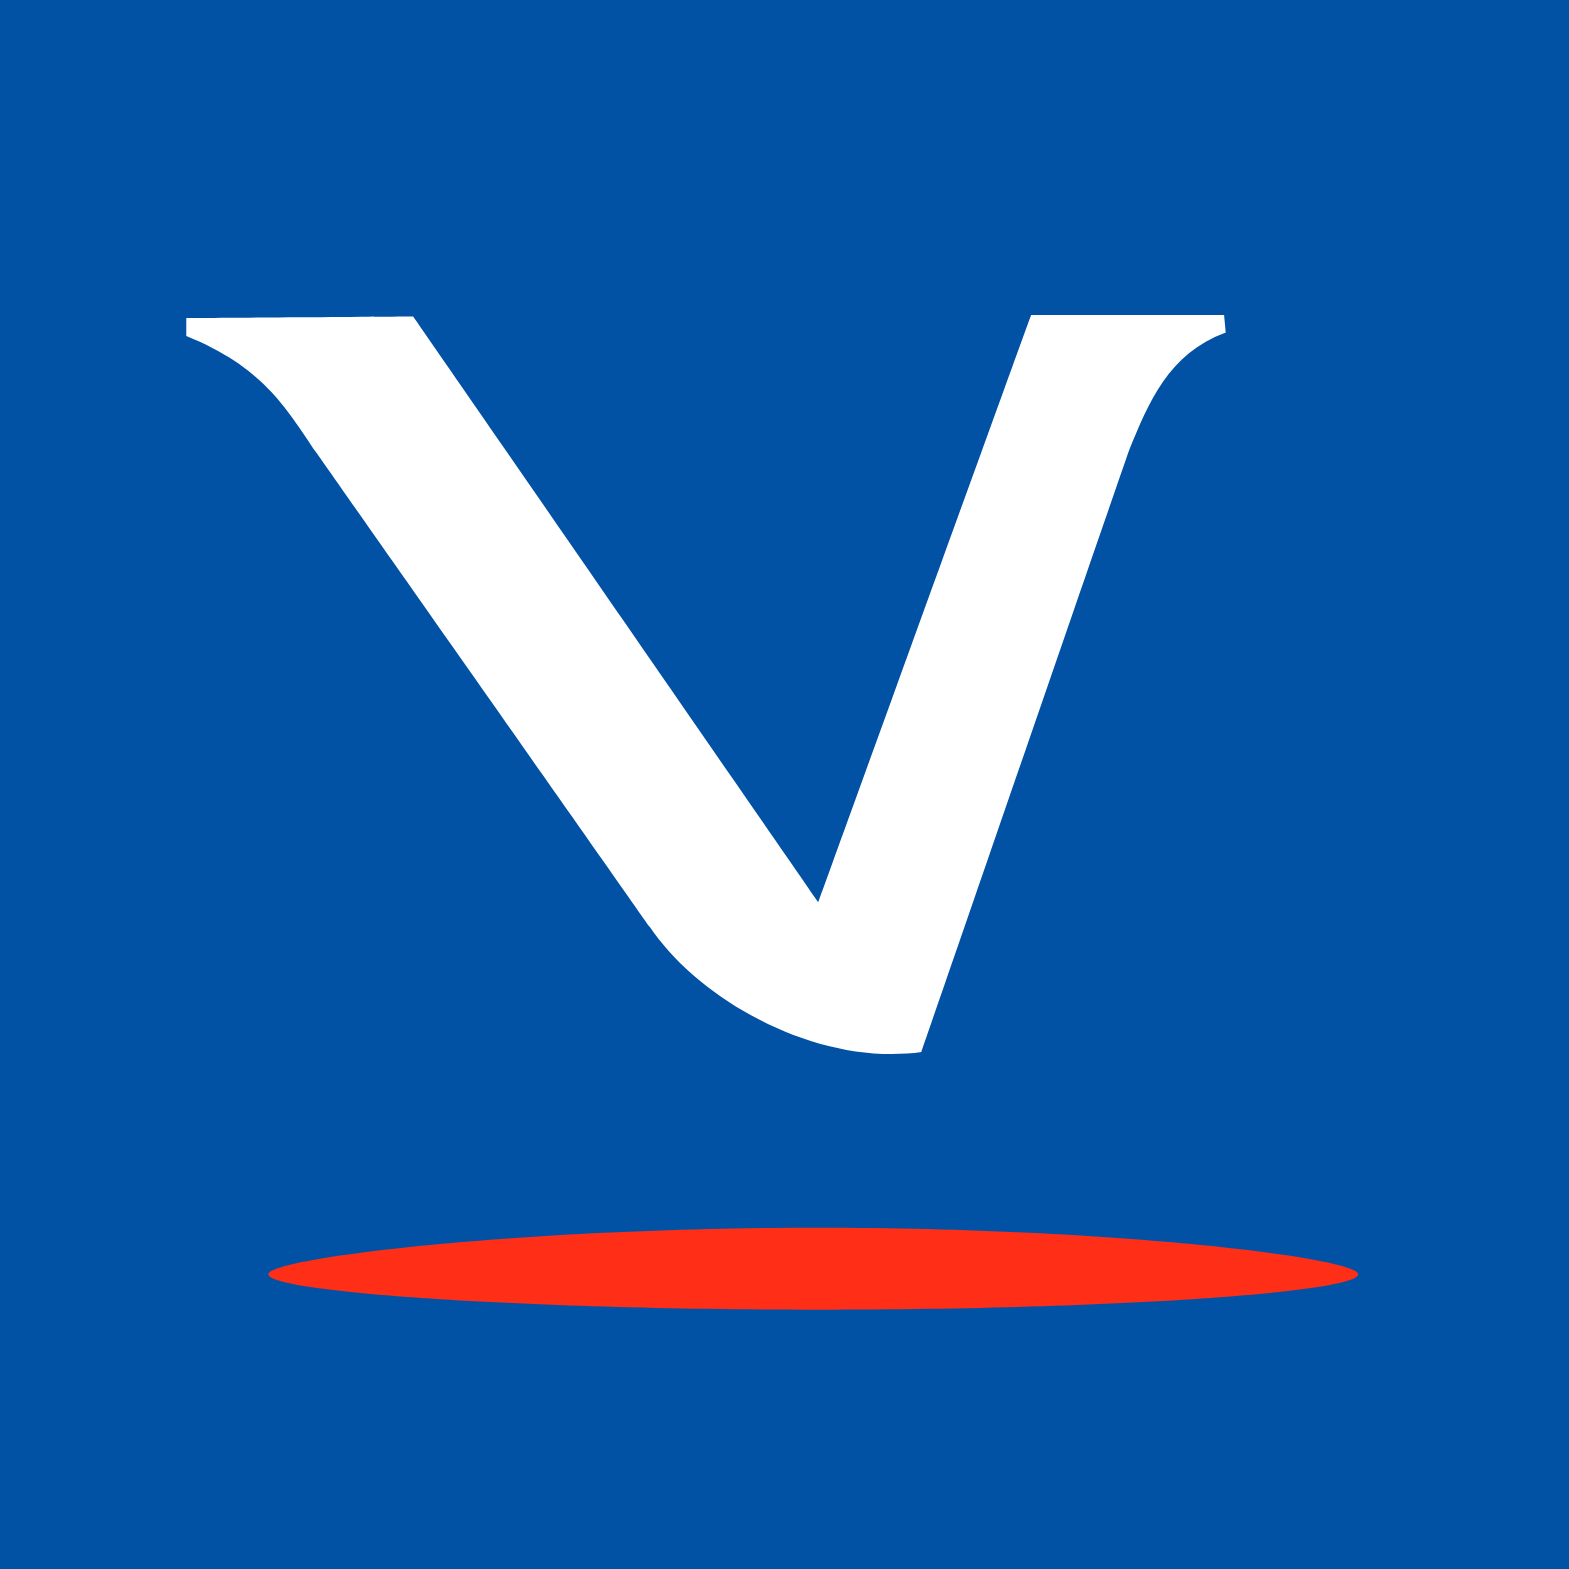 Virbac SA logo (PNG transparent)